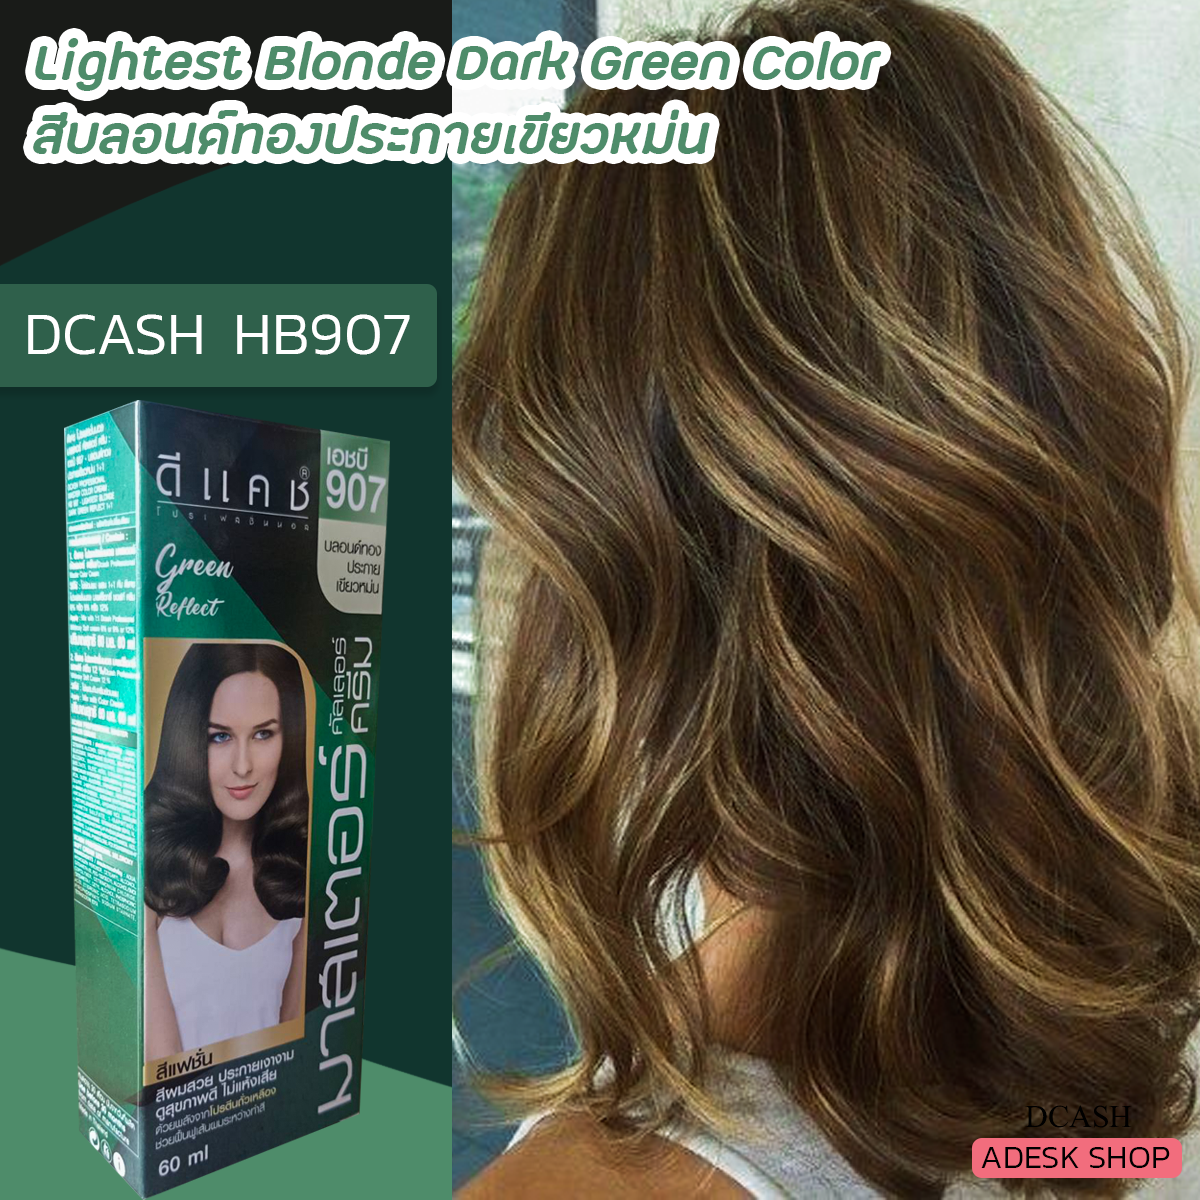 ดีแคช มาสเตอร์ Hb907 สีบลอนด์ทองประกายเขียวหม่น สีผม สีย้อมผม ครีมเปลี่ยน สีผม ราคาถูก Dcash Master Hb907 Lightest Blonde Dark Green Hair Color Cream  | Lazada.Co.Th